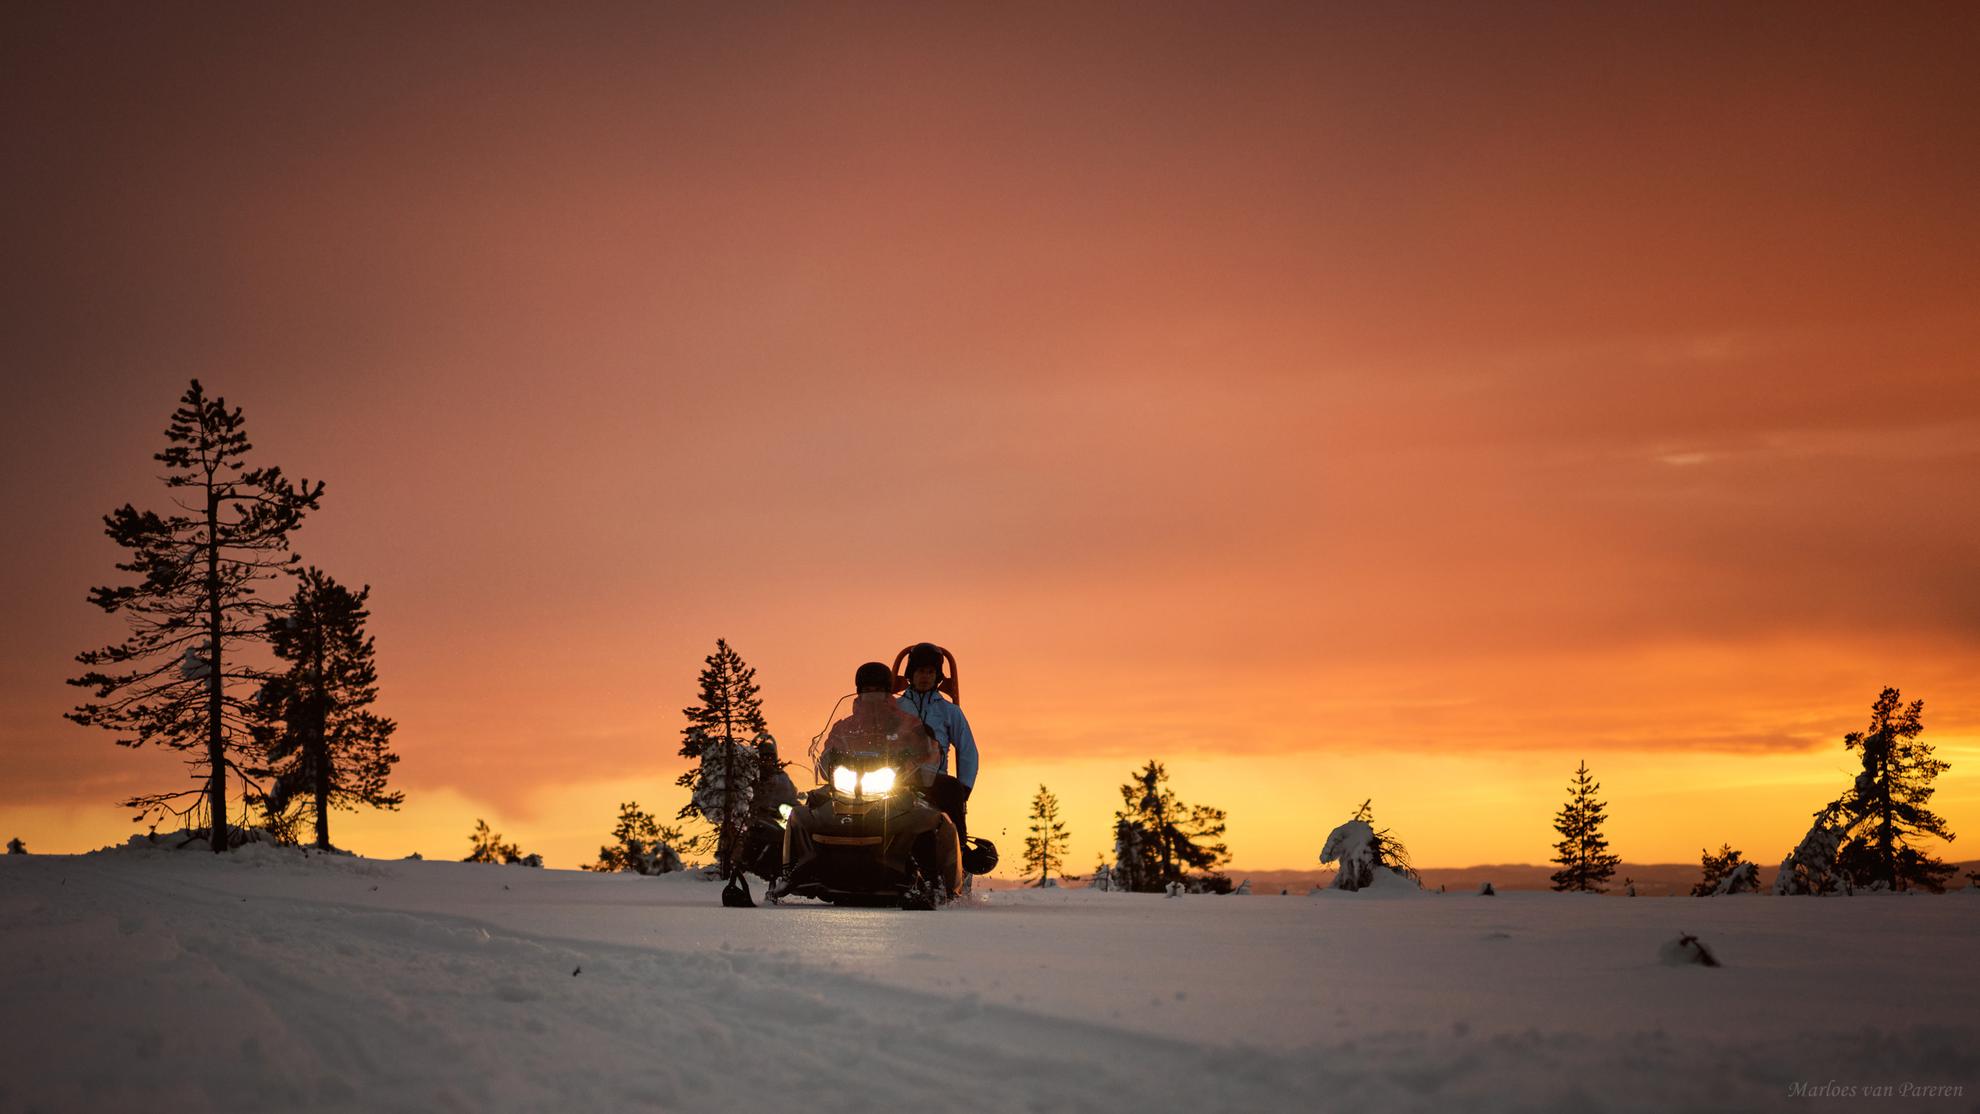 Zwei Personen sitzen auf einem Schneemobil in Schweden. Der Himmel ist durch das orangene Licht der Abendsonne gefärbt.